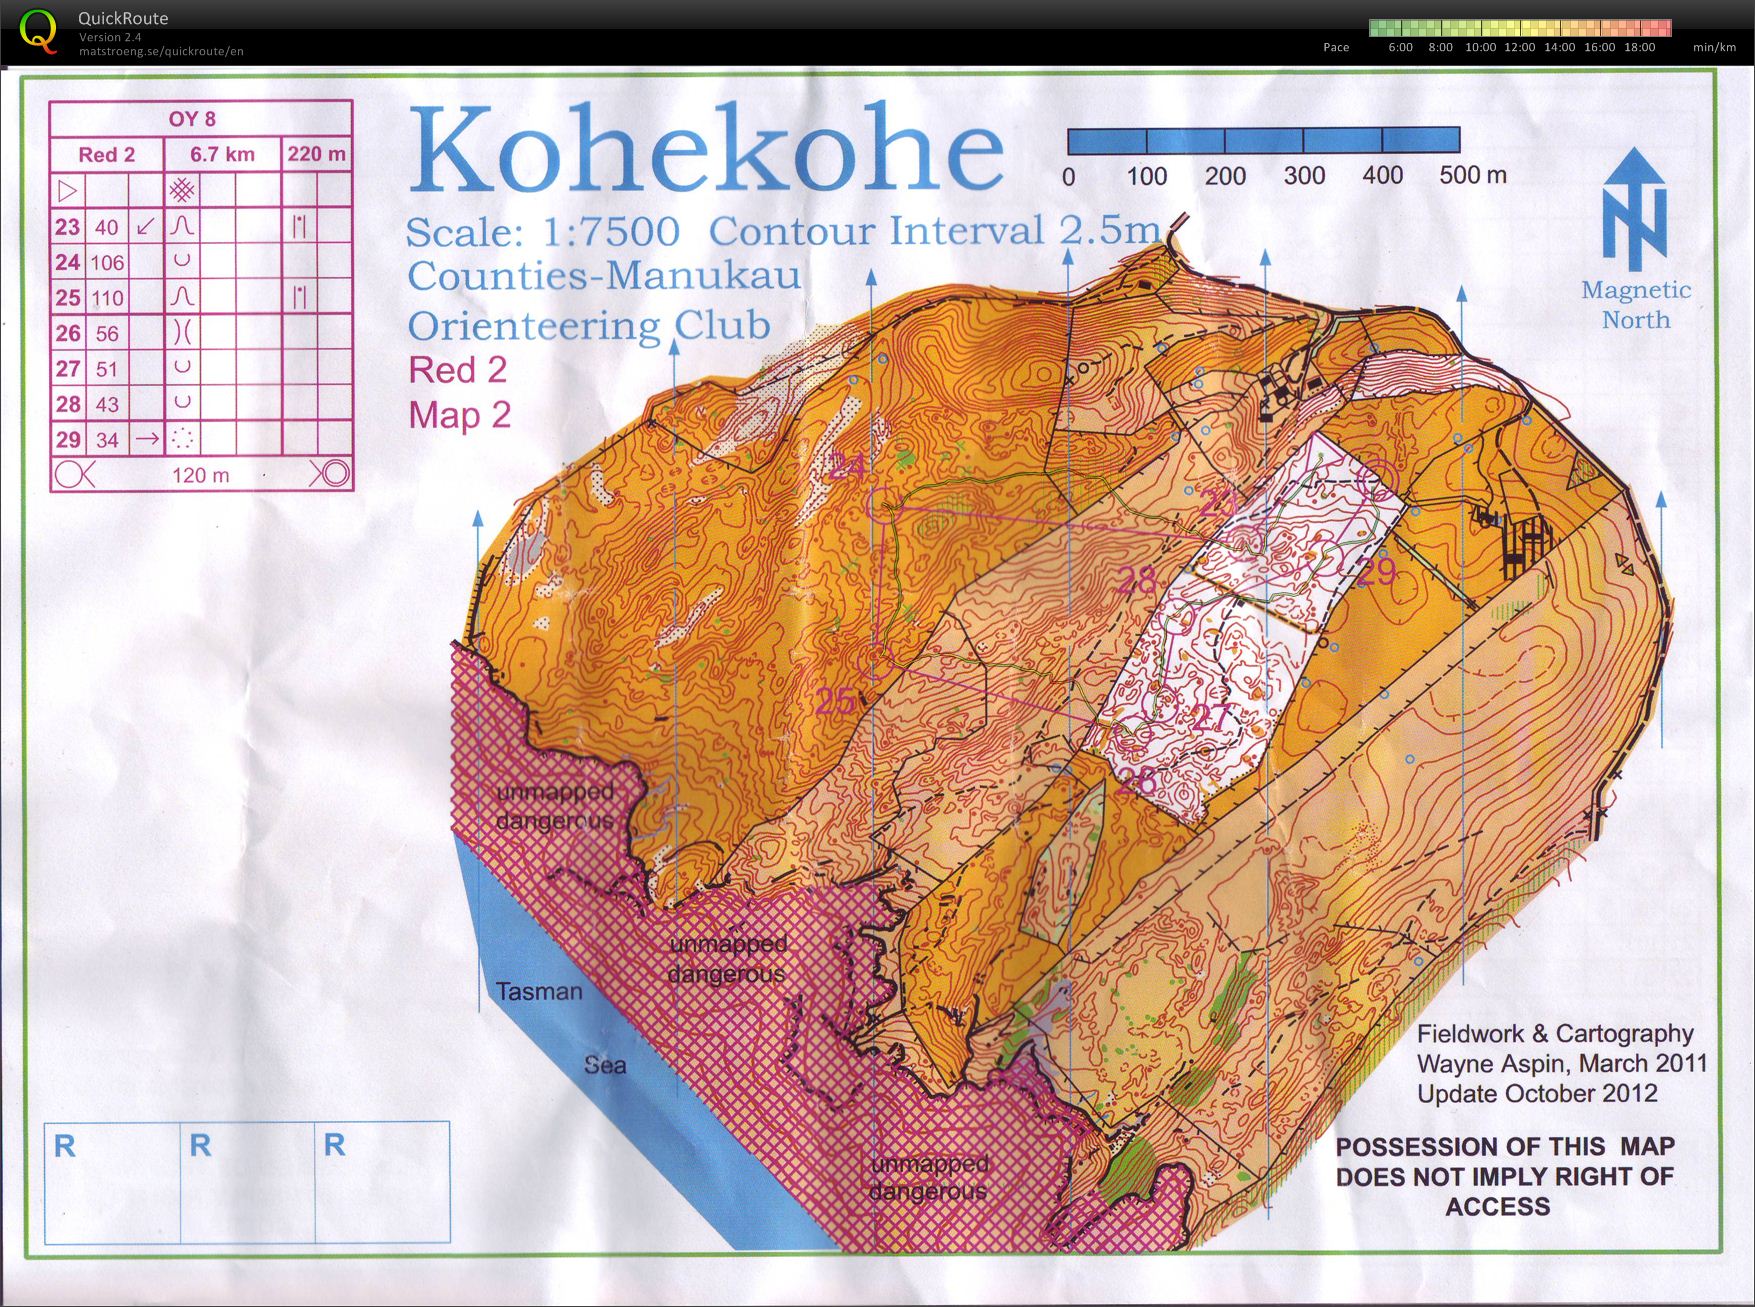 OY8 Kohekohe (part 2) (27/10/2012)